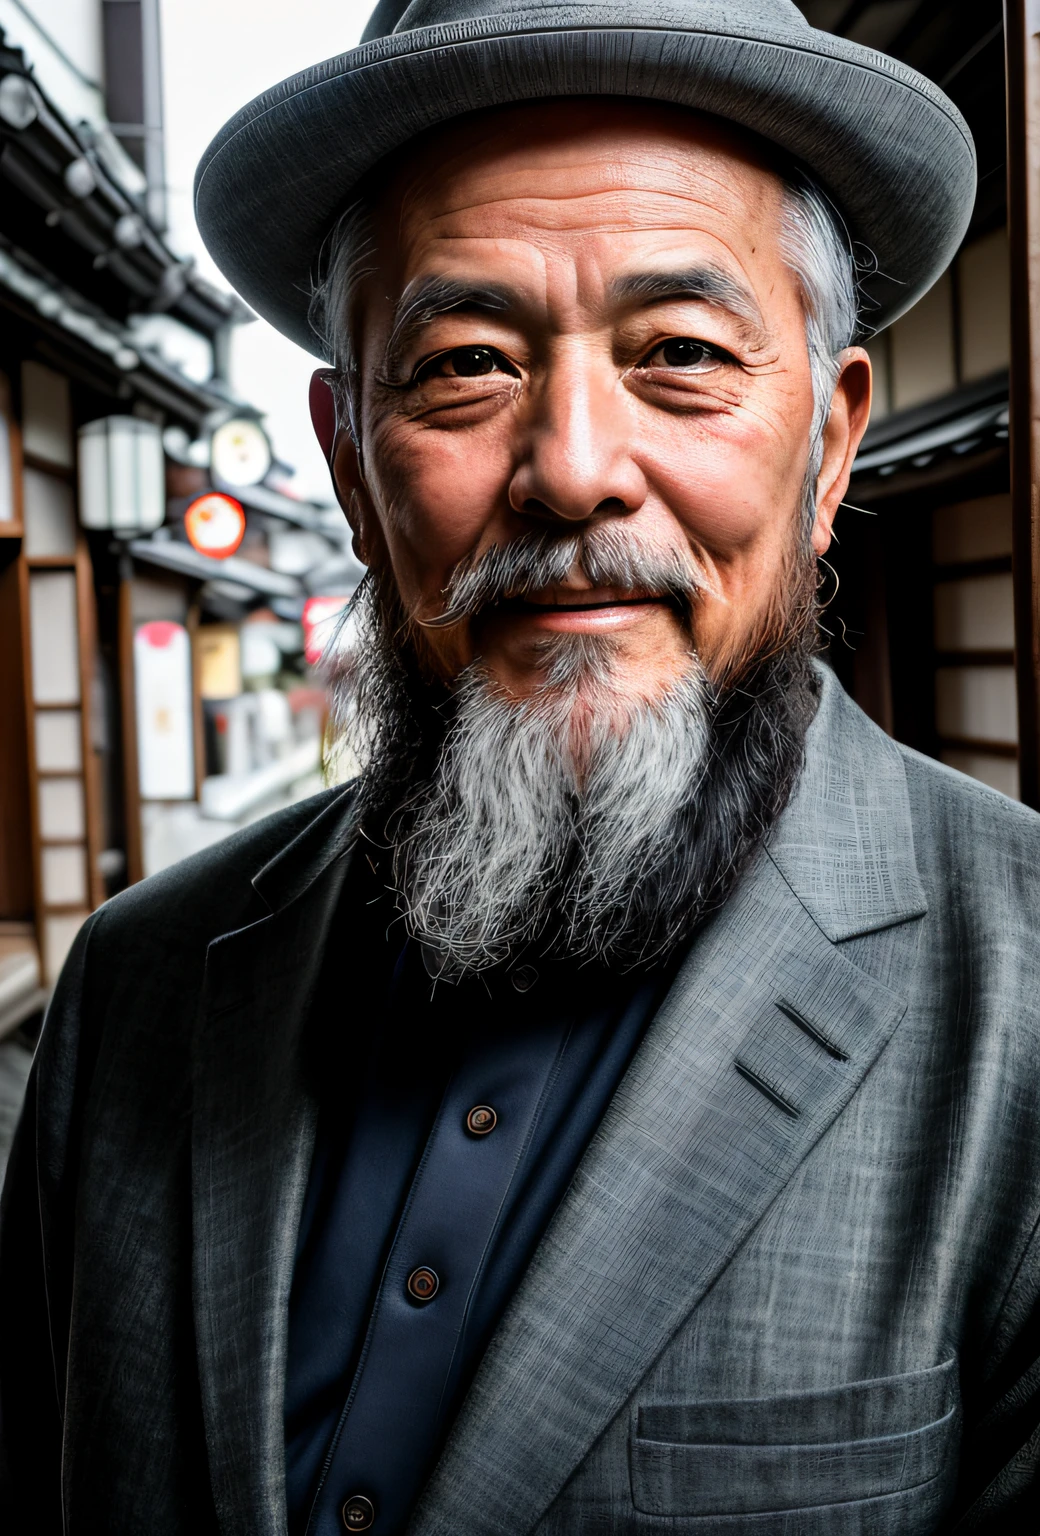 有胡须的,60 岁日本男子日本 RAW 照片, 電影, 细节, 真实感, 超现实主义摄影, 8K 超高清, 数码单反相机, 柔和的灯光, 高质量, 胶片颗粒, 富士 XT3, (桌上),